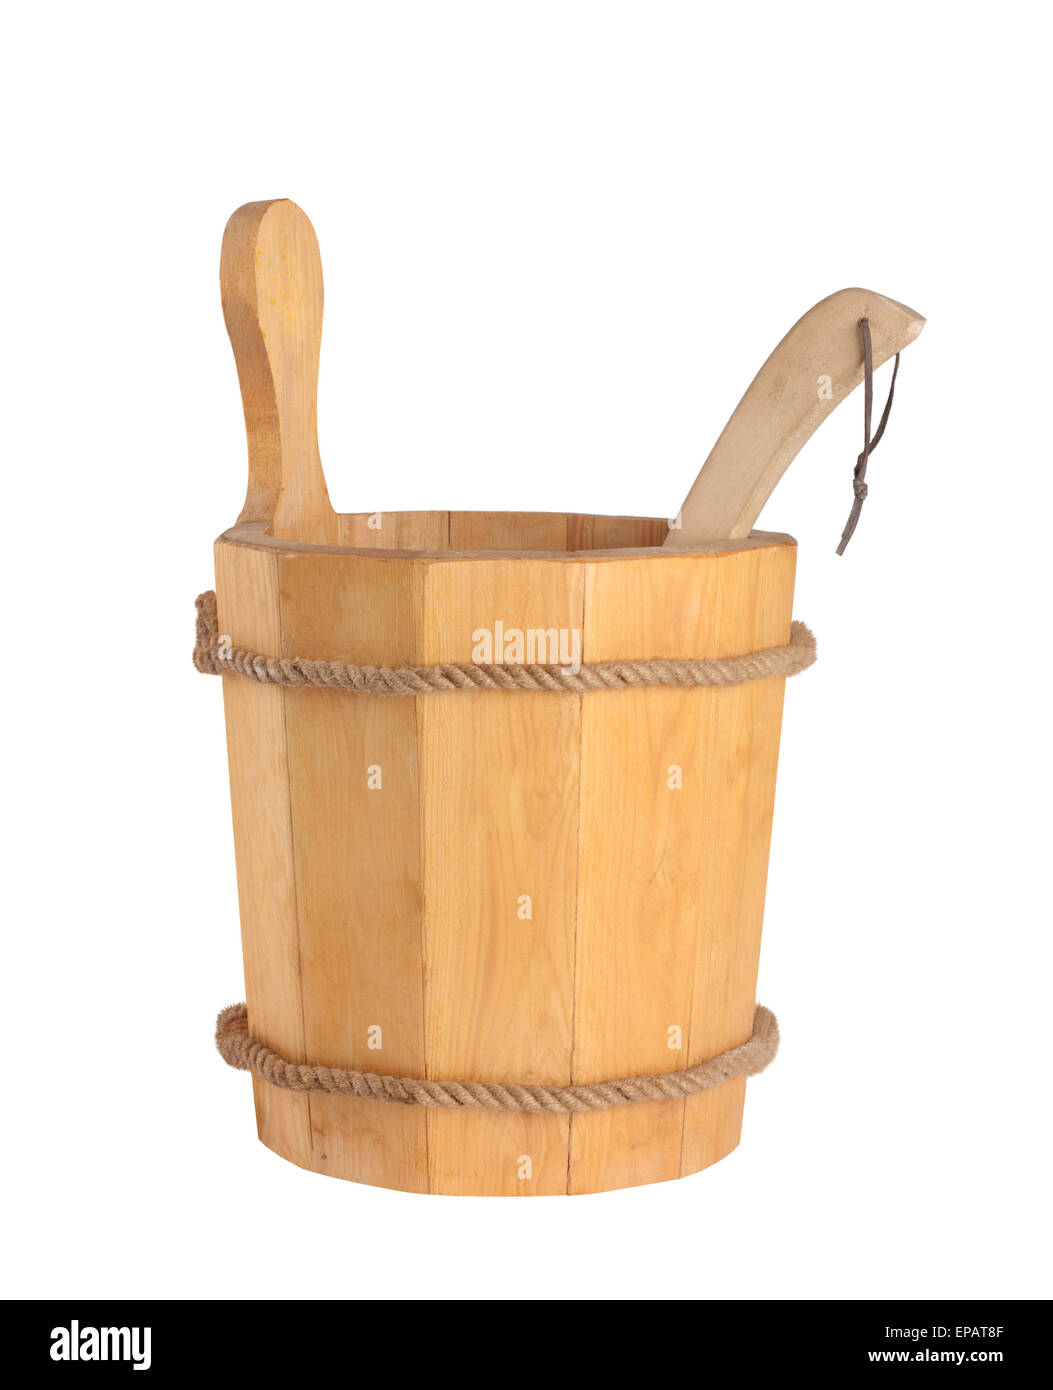 Cucchiaio di legno con siviera per la sauna isolati su sfondo bianco Foto Stock